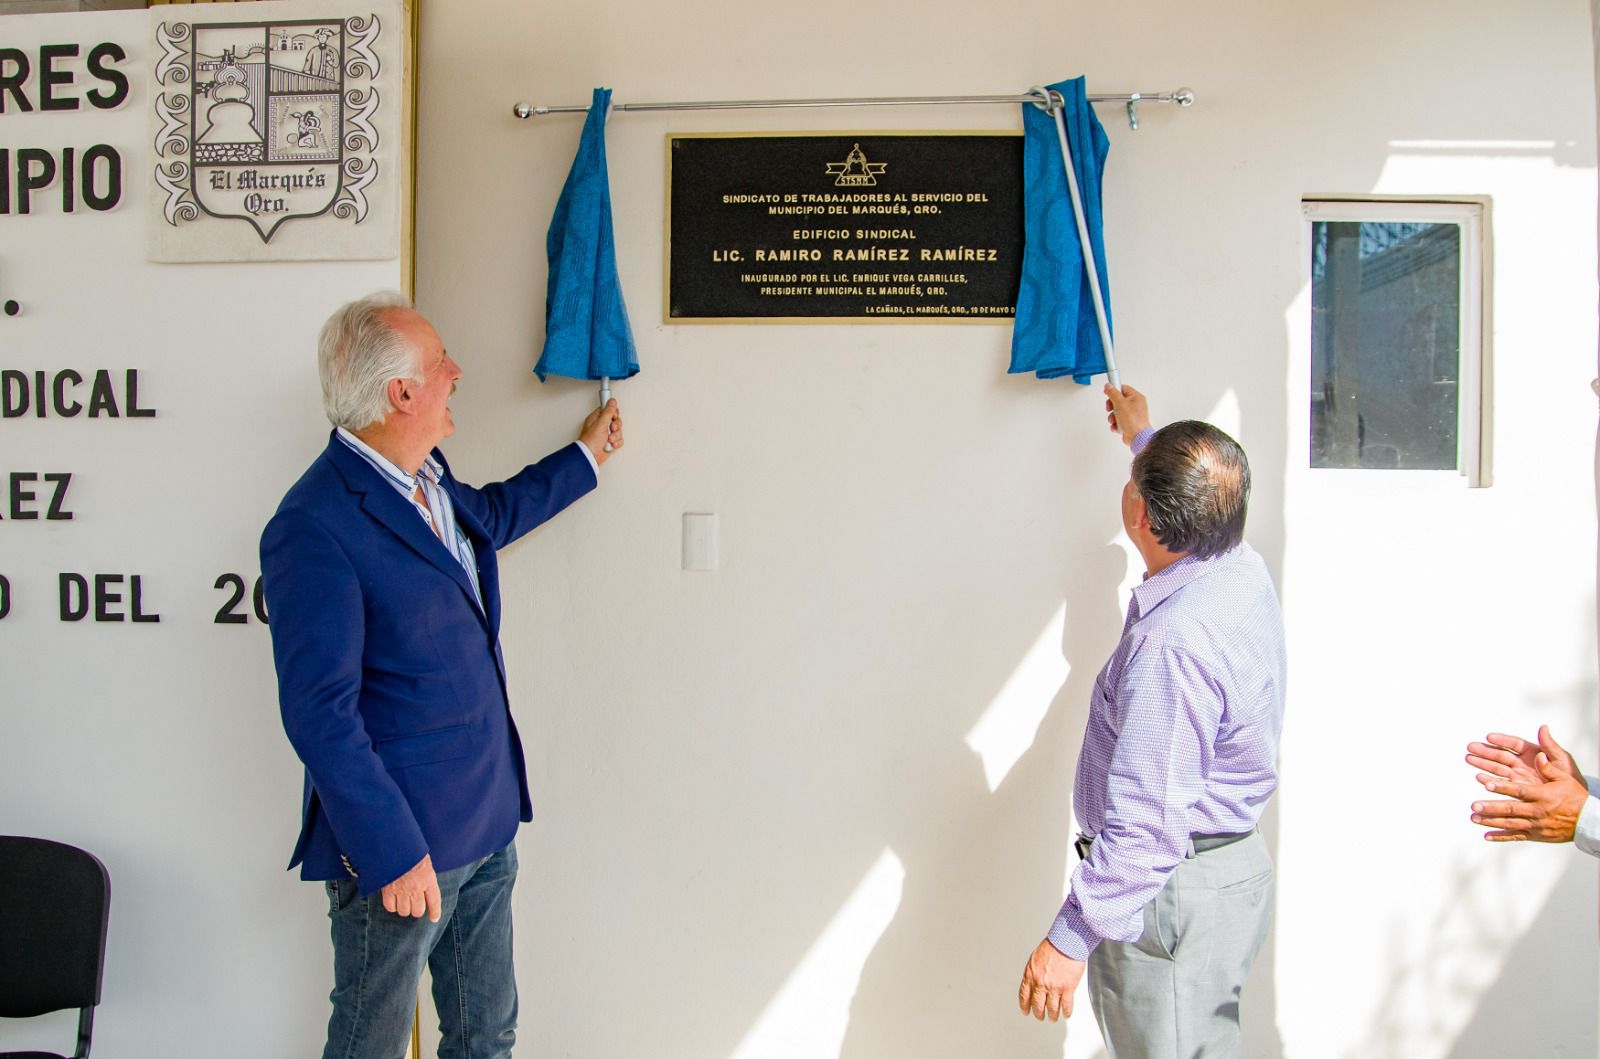 Enrique Vega Carriles reinaugura el edificio del Sindicato de Trabajadores al Servicio del Municipio de El Marqués